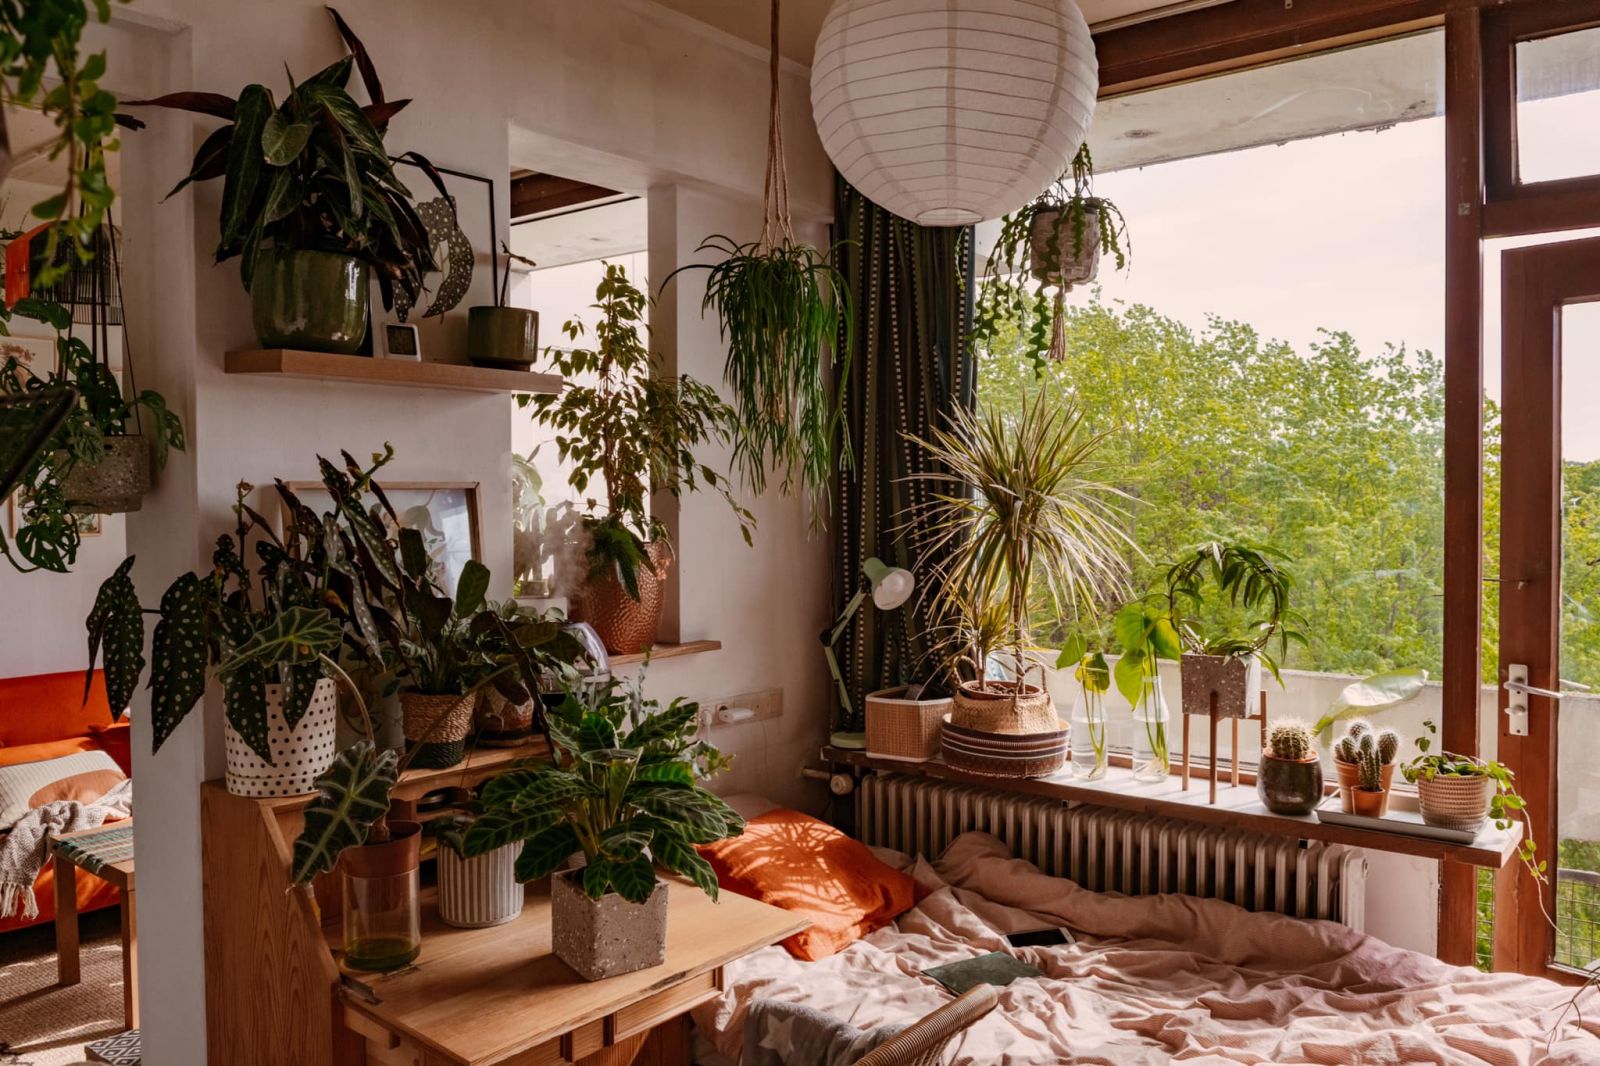 Thiết kế nội thất biệt thự phong cách vườn quê cho phòng ngủ 